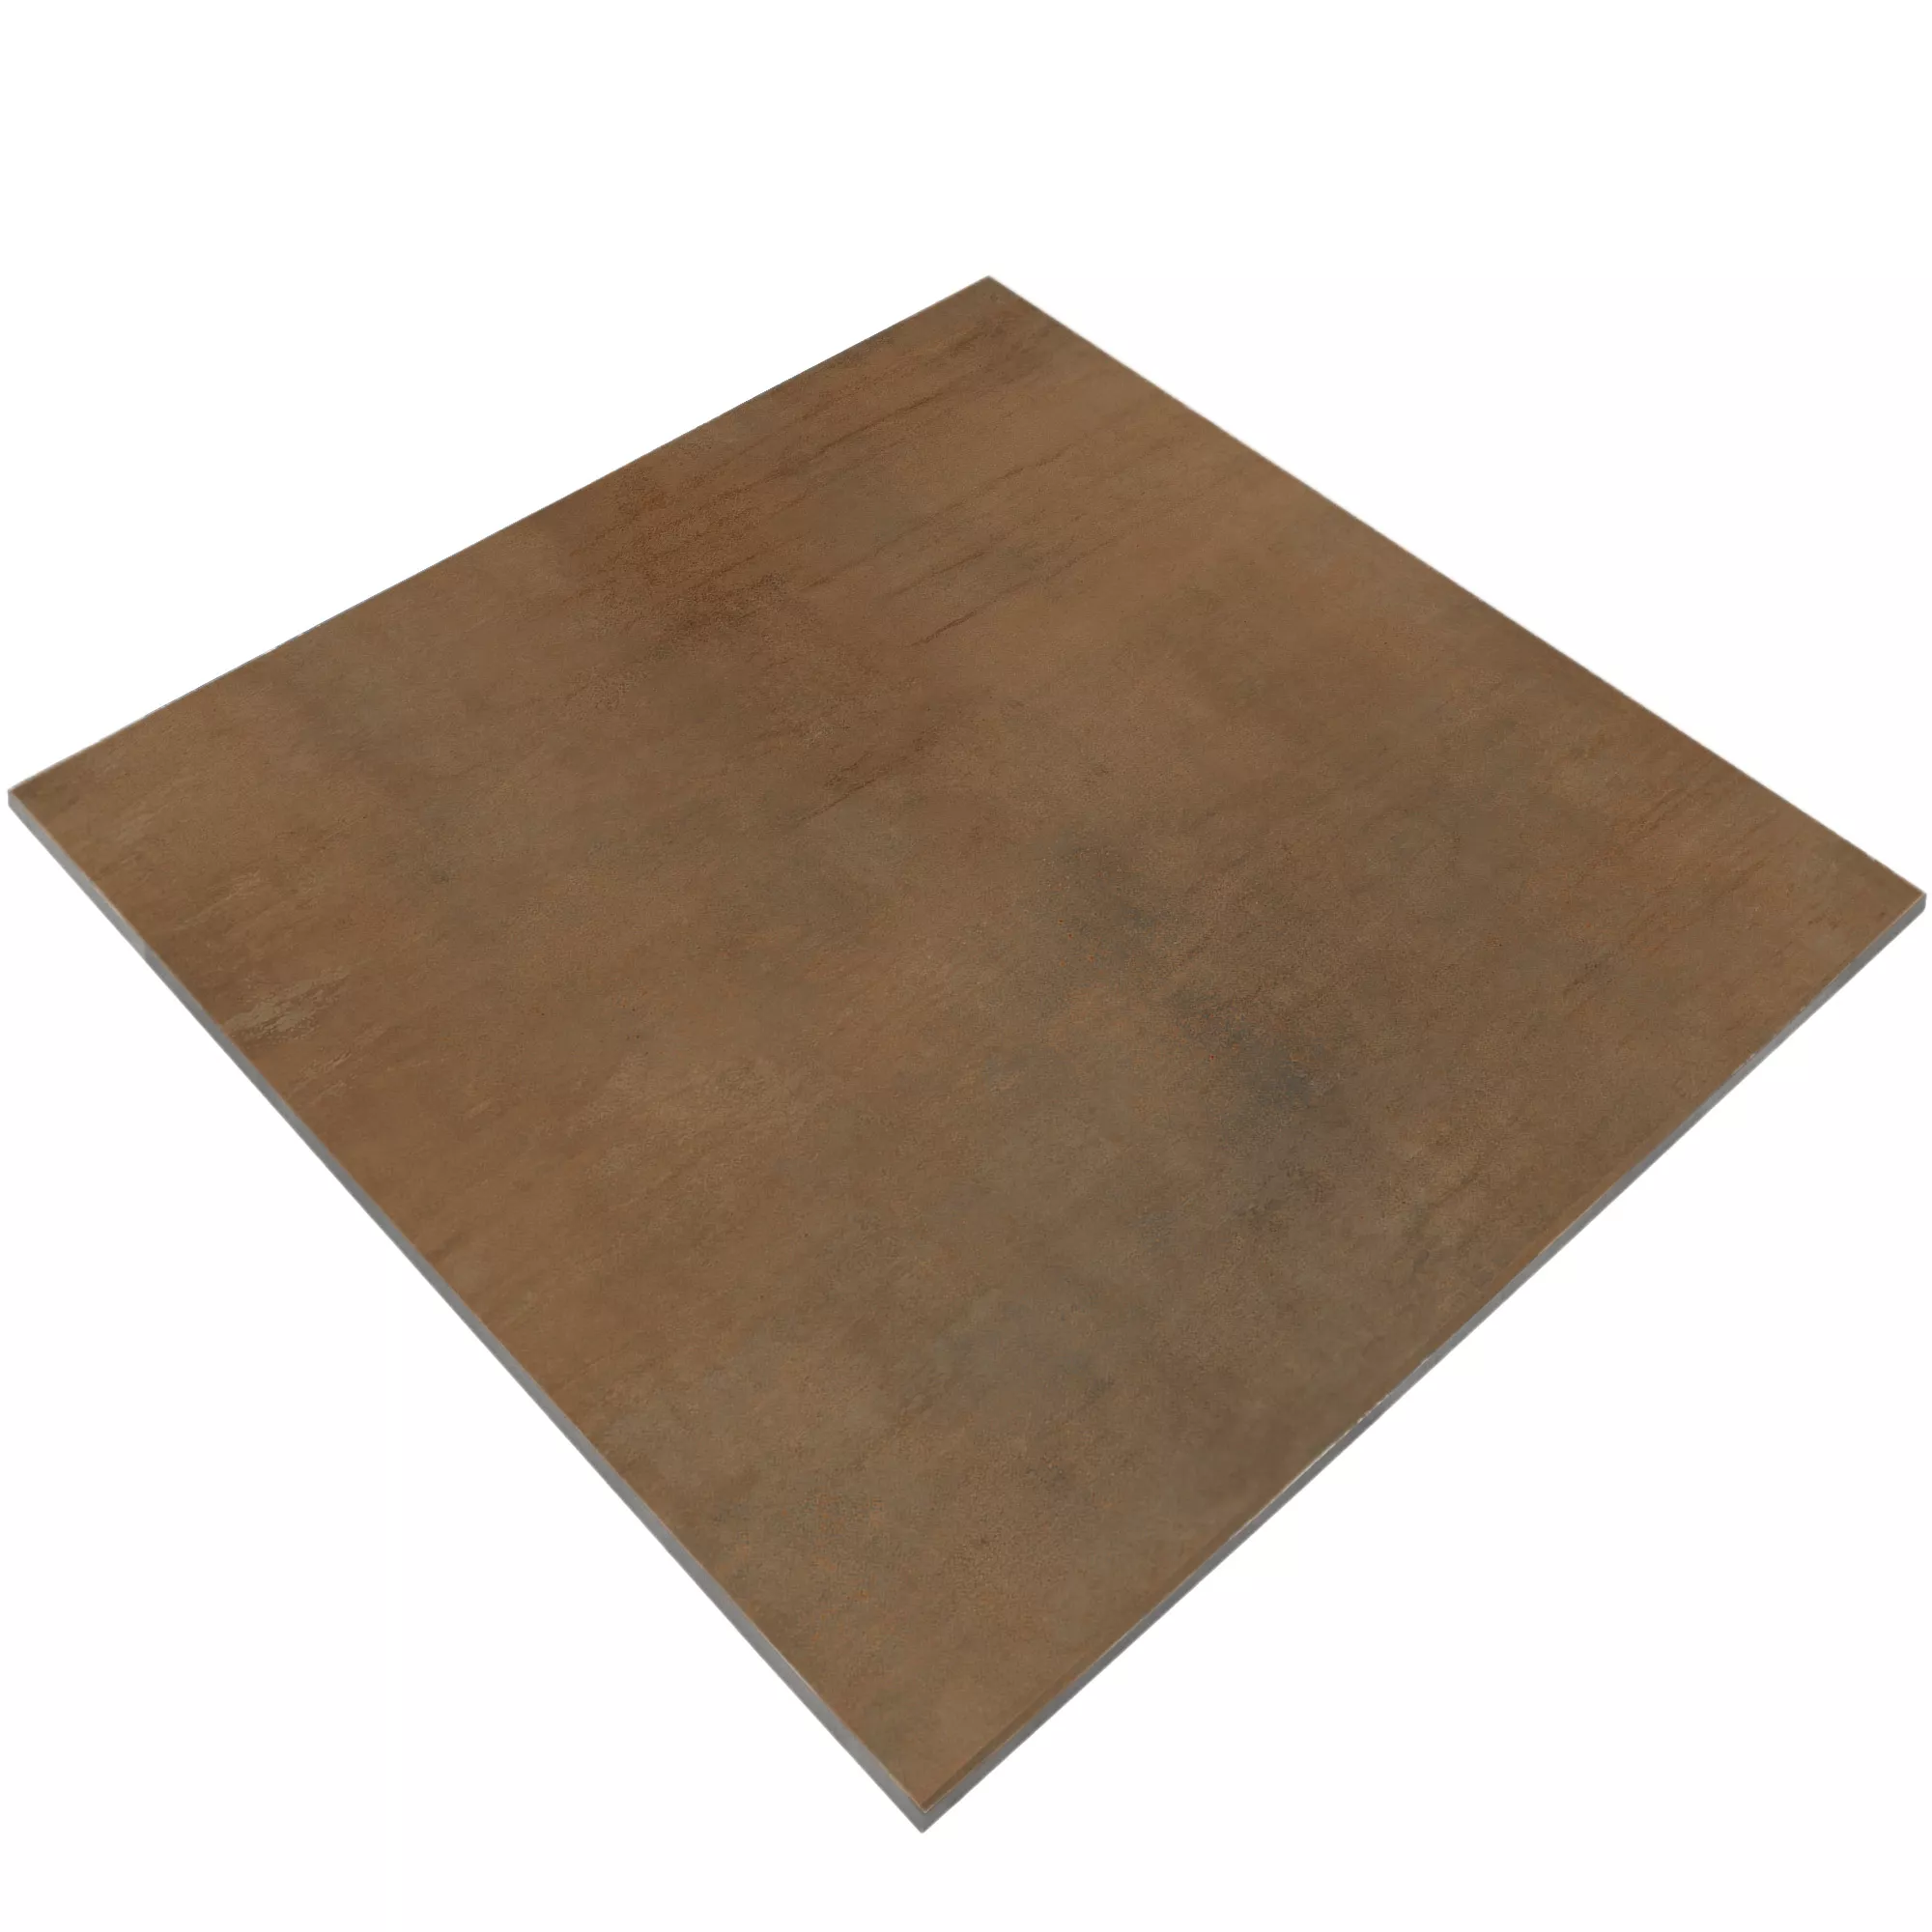 Sample Floor Tiles Tycoon Beton Optic R10 Brown 60x60cm